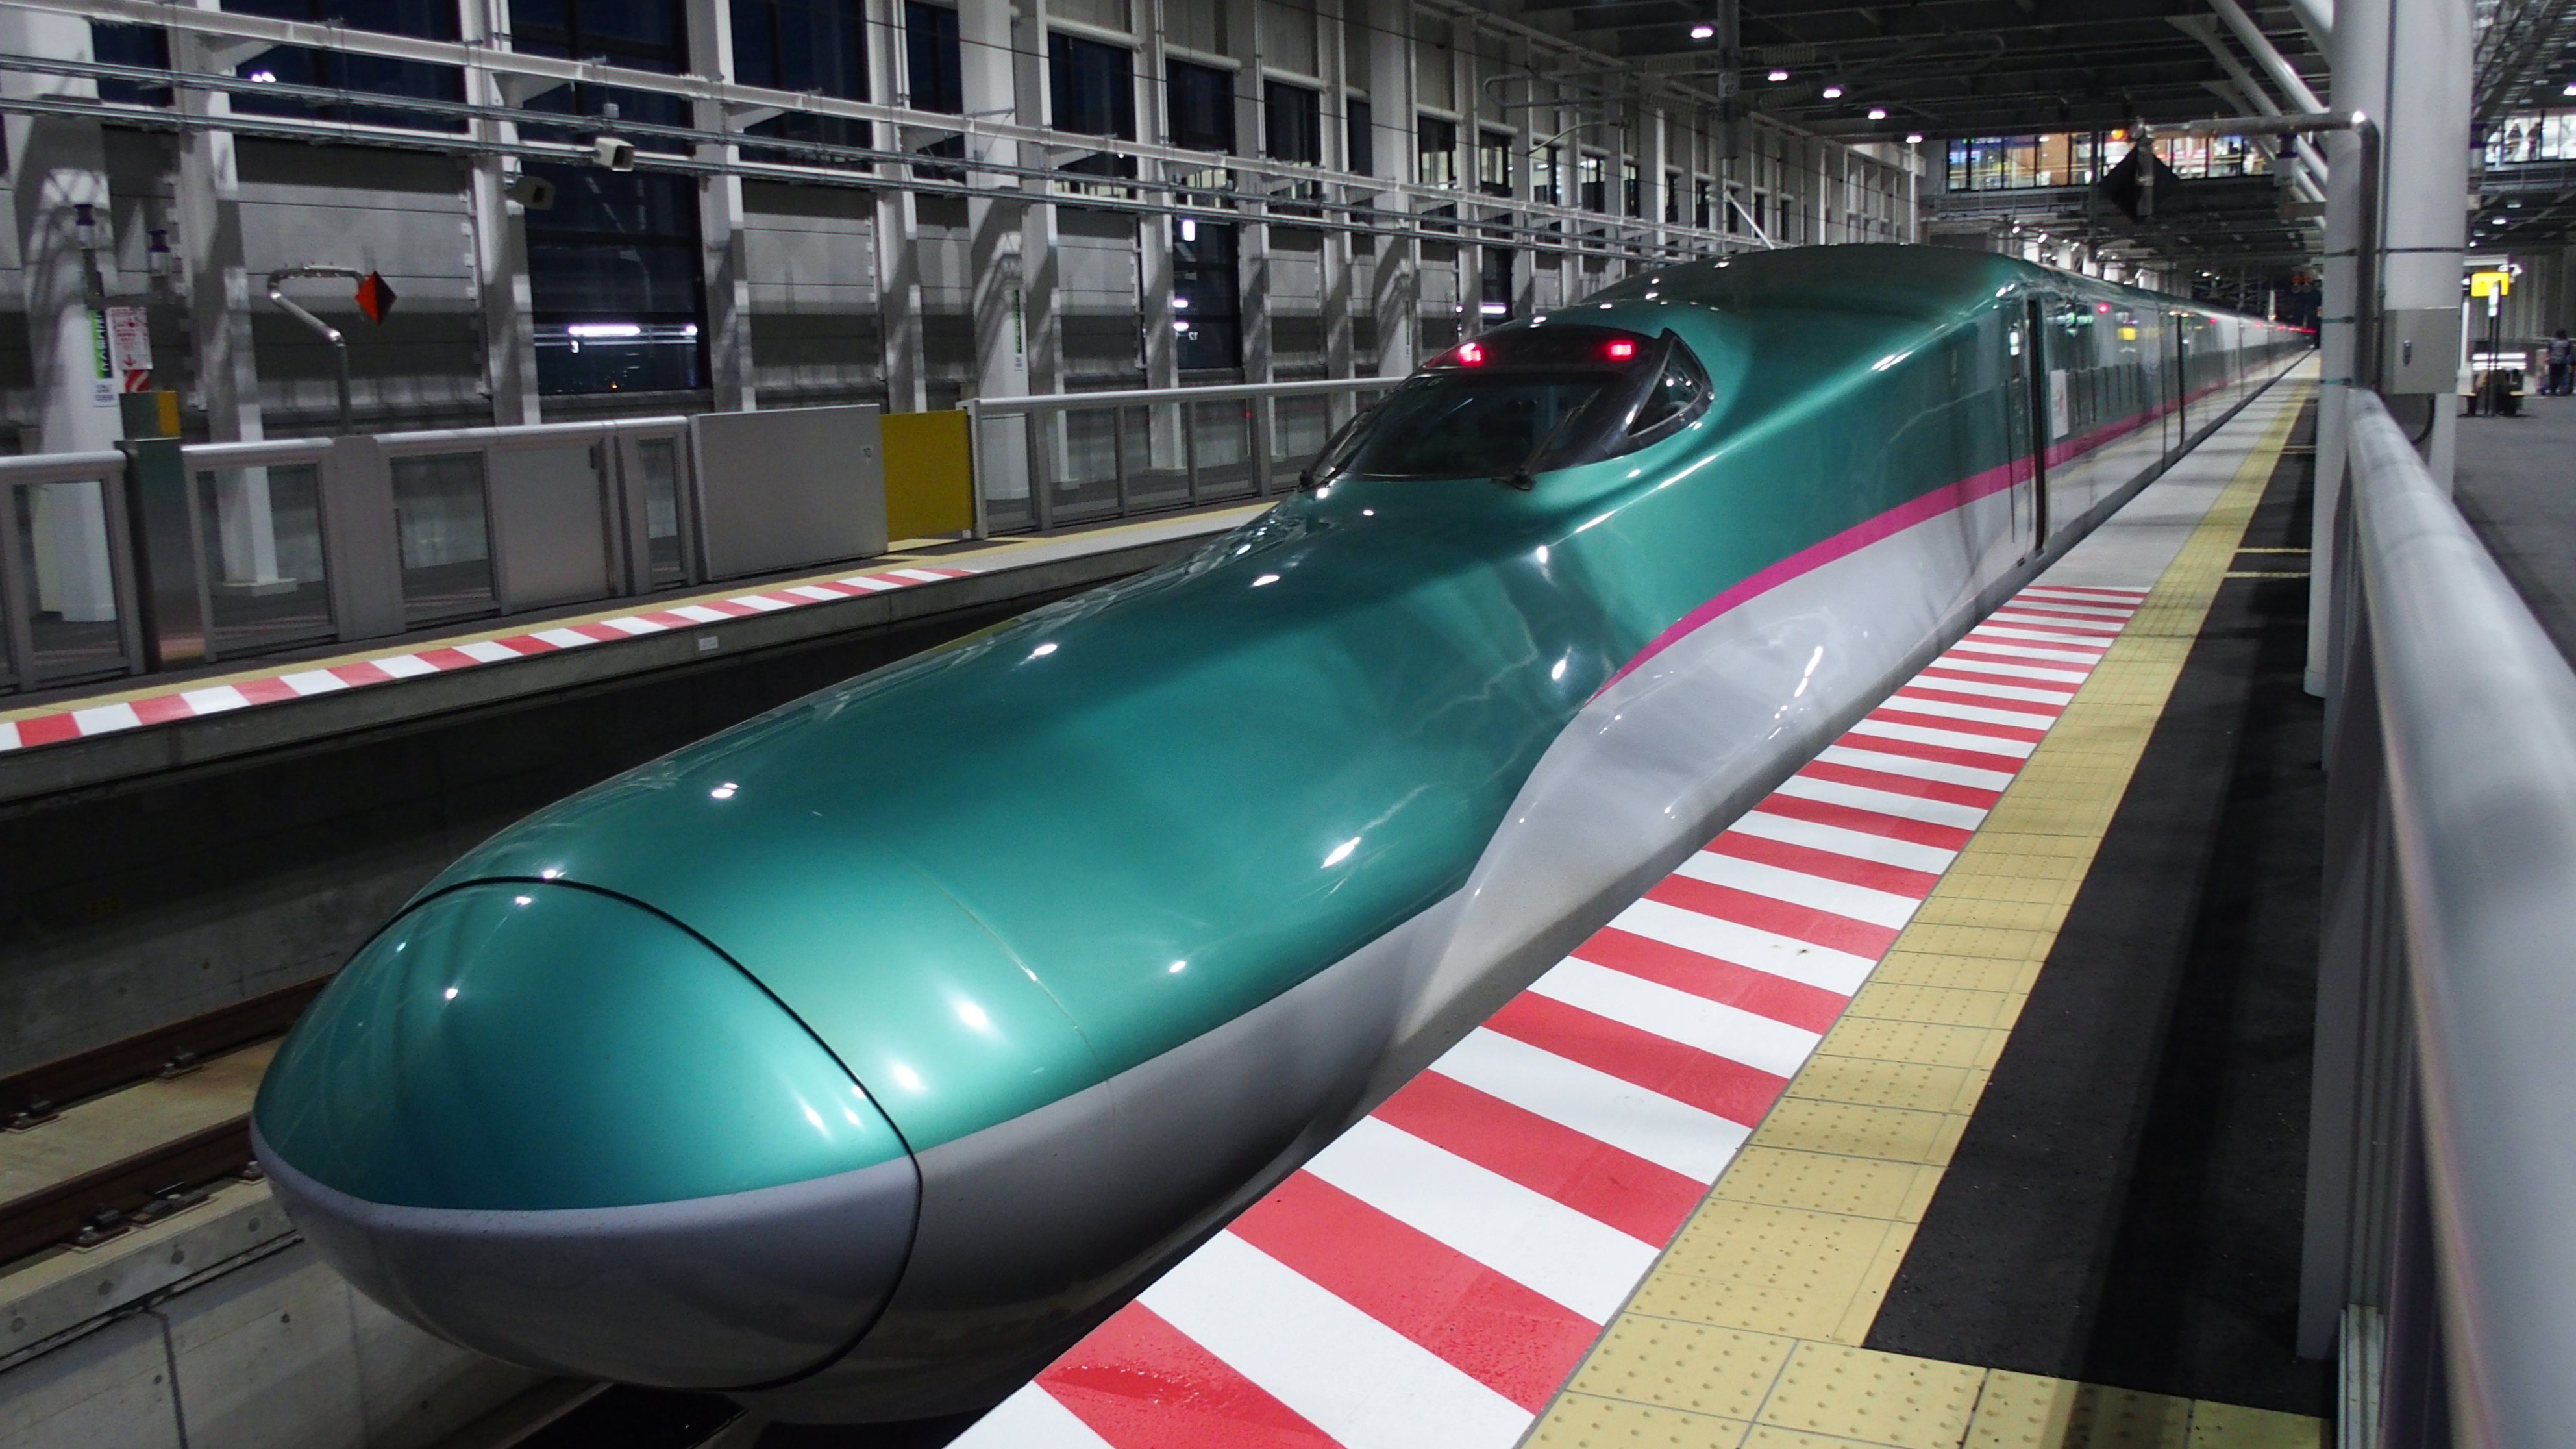 「なぜ青函トンネルはJR北海道の区間なのか」という疑問について。